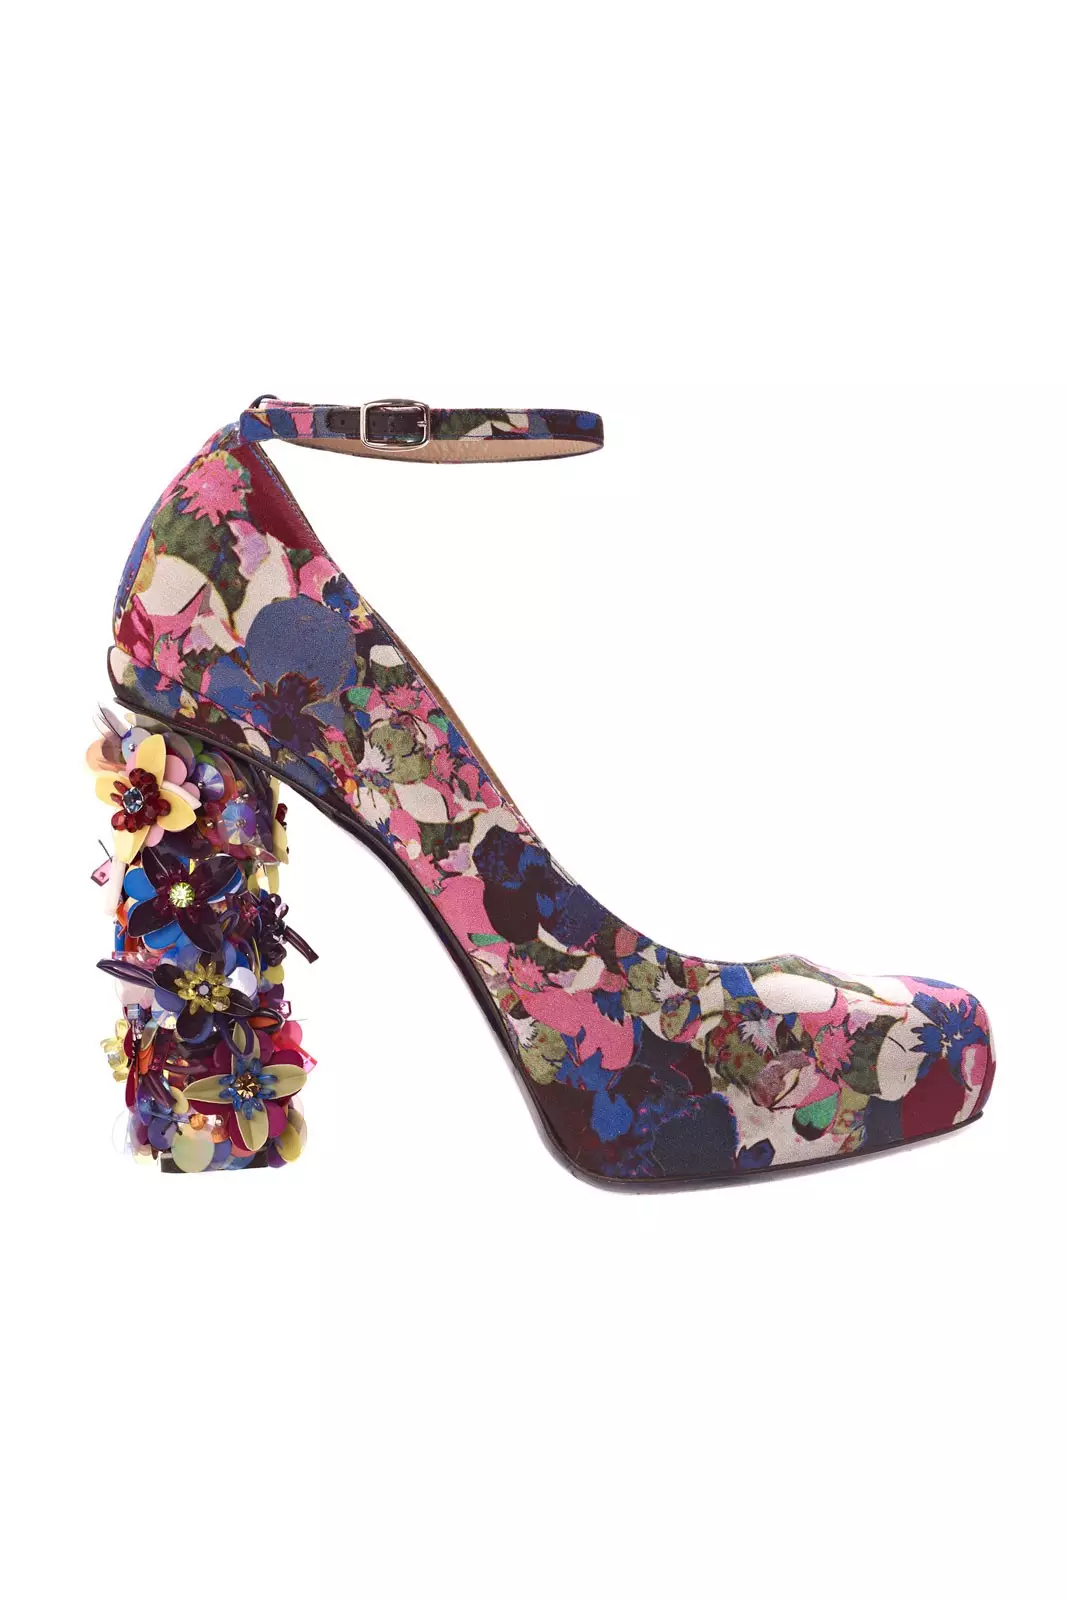 Zapatos con flores (42 fotos): Qué usar modelos femeninos con estampado floral 2381_15